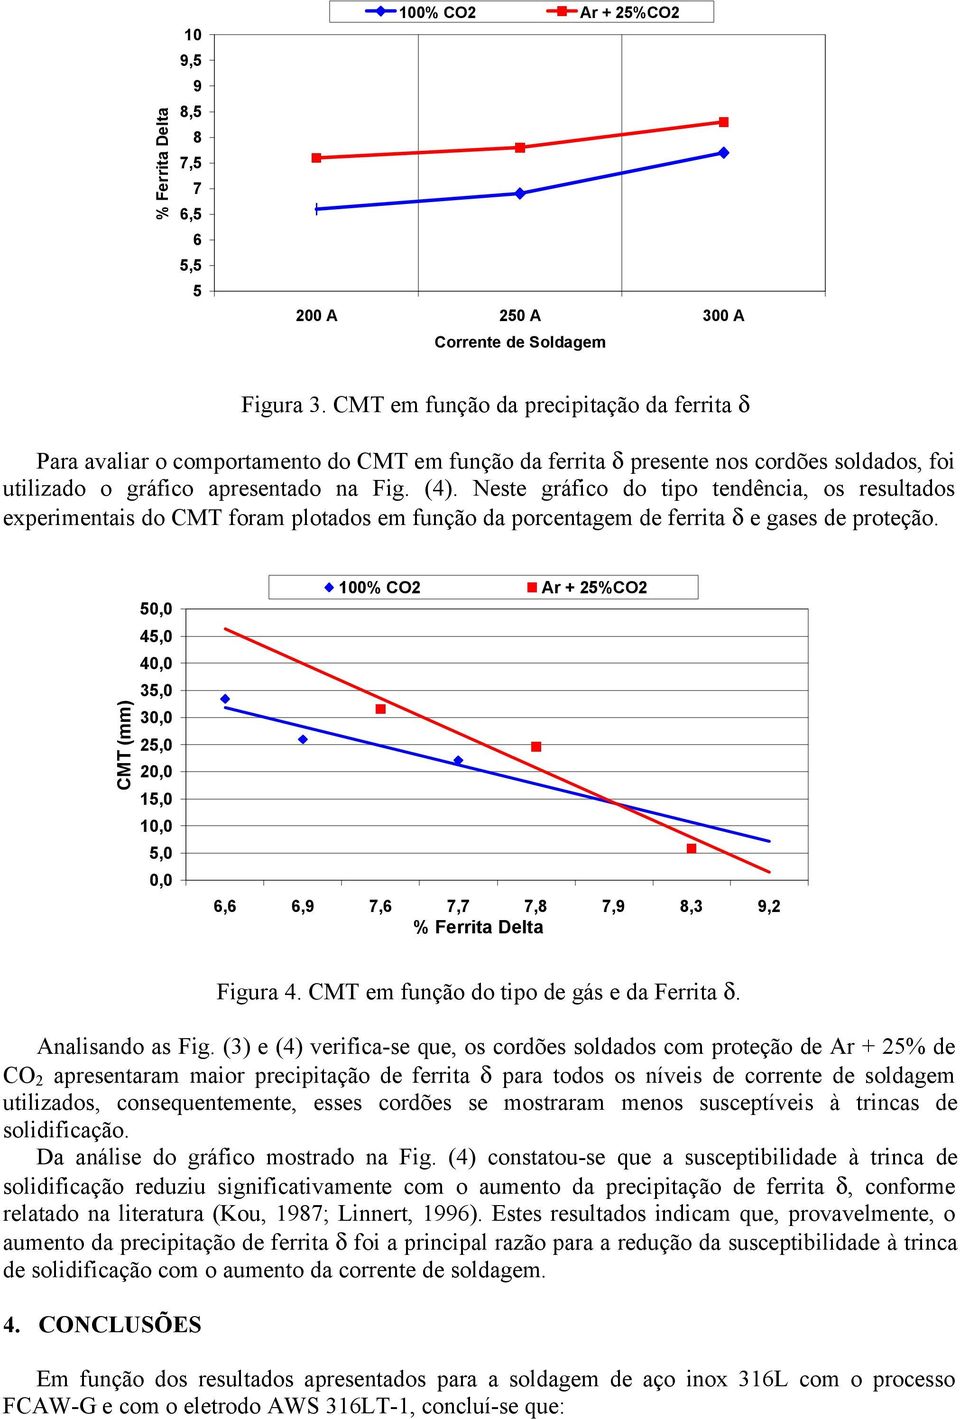 Neste gráfico do tipo tendência, os resultados experimentais do CMT foram plotados em função da porcentagem de ferrita δ e gases de proteção.